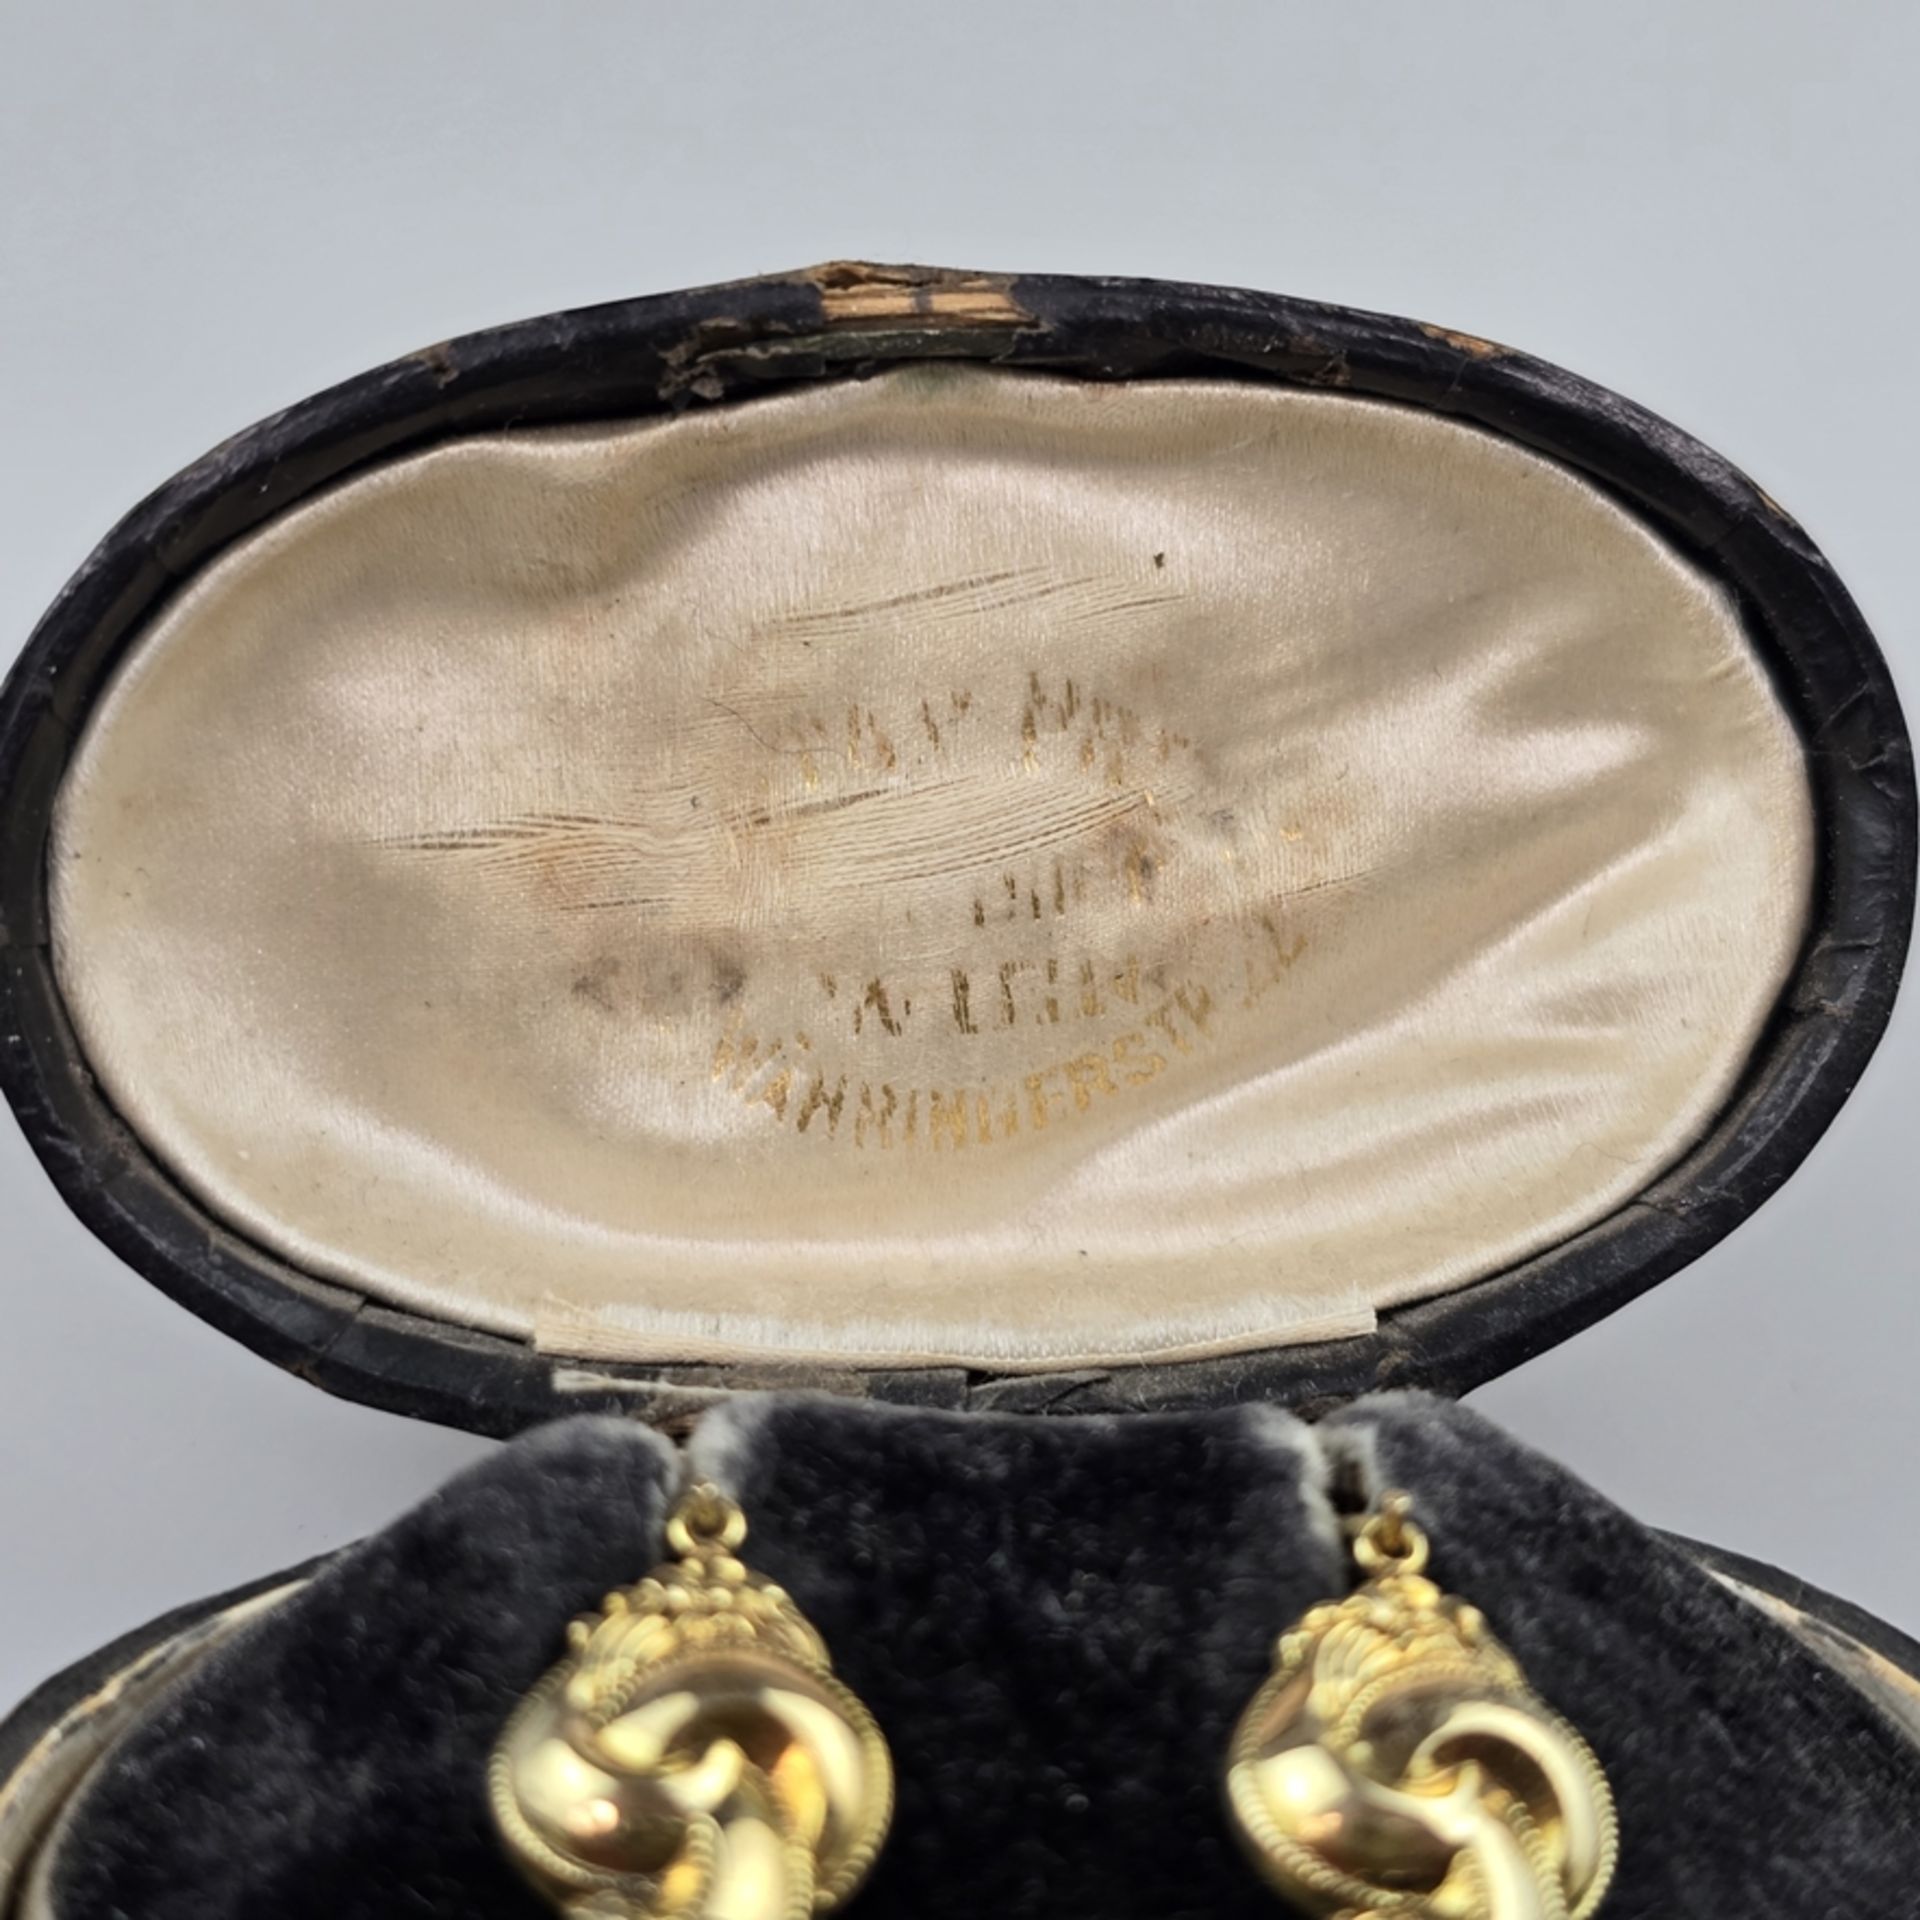 Ein Paar Biedermeier-Ohrringe - Schaumgold 333/000 (8K), gestempelt „333“ sowie "GE", L. 1,8 cm, Ge - Bild 4 aus 5